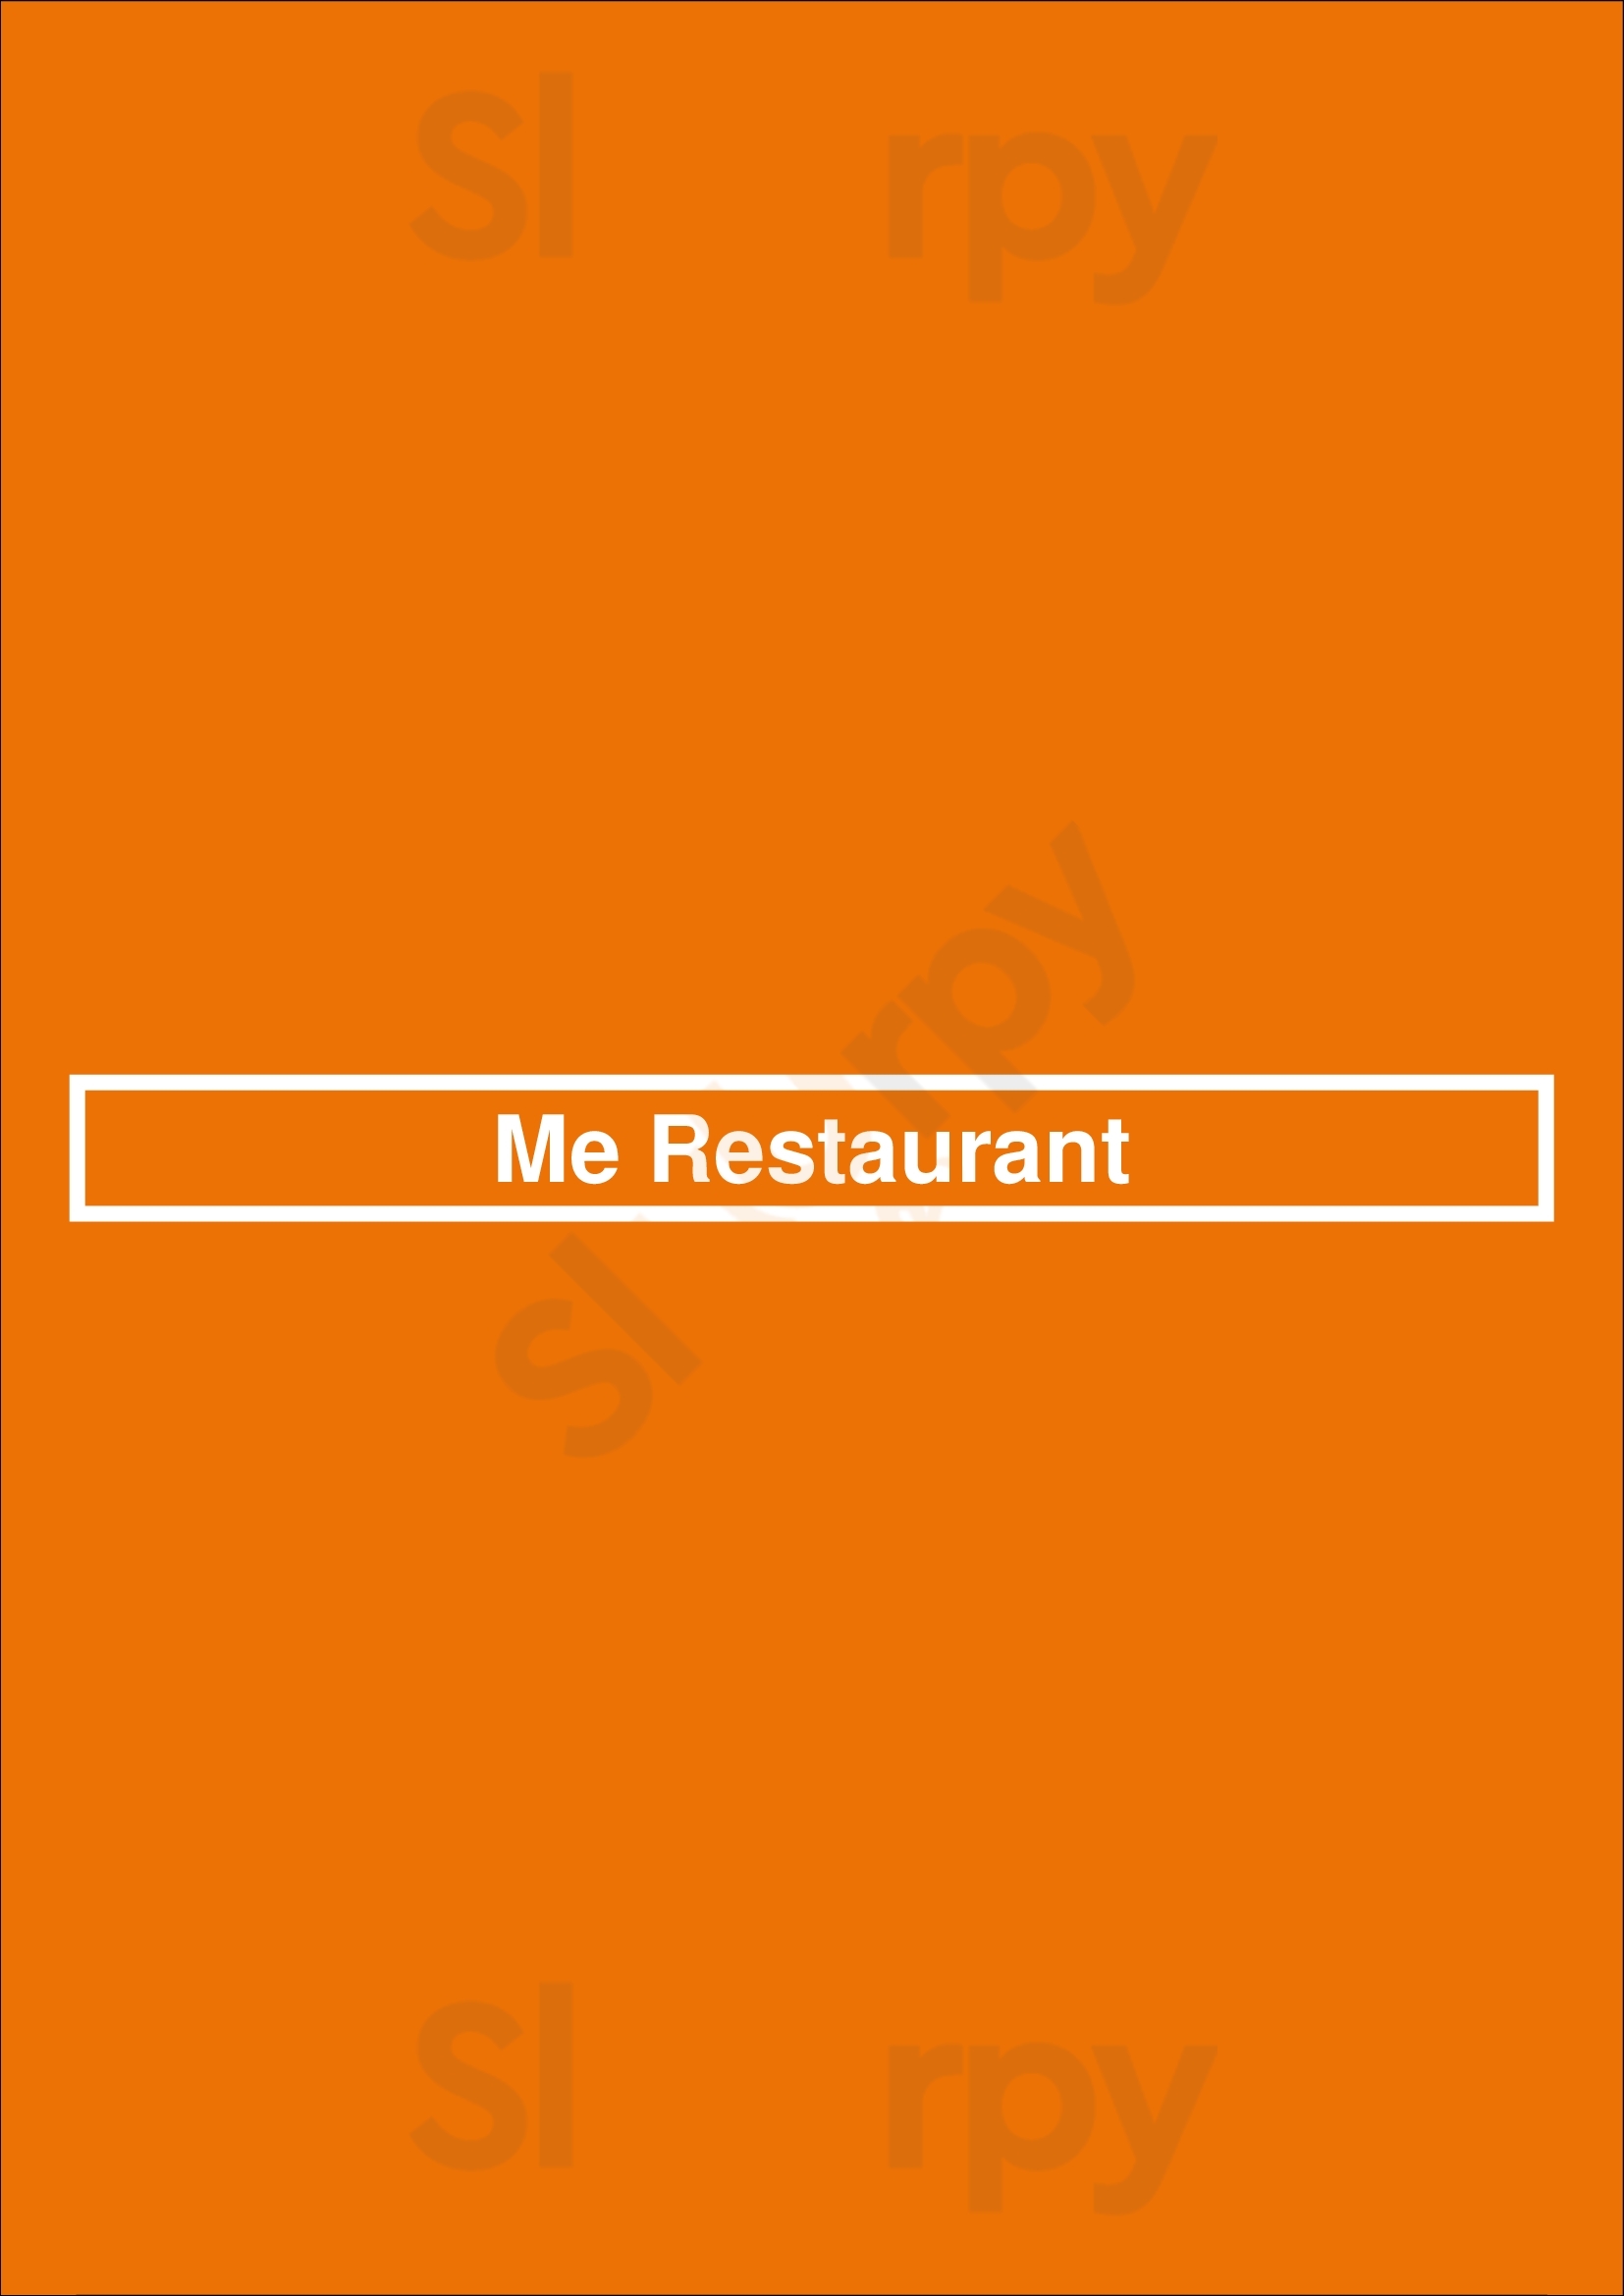 Me Restaurant Berlin Menu - 1